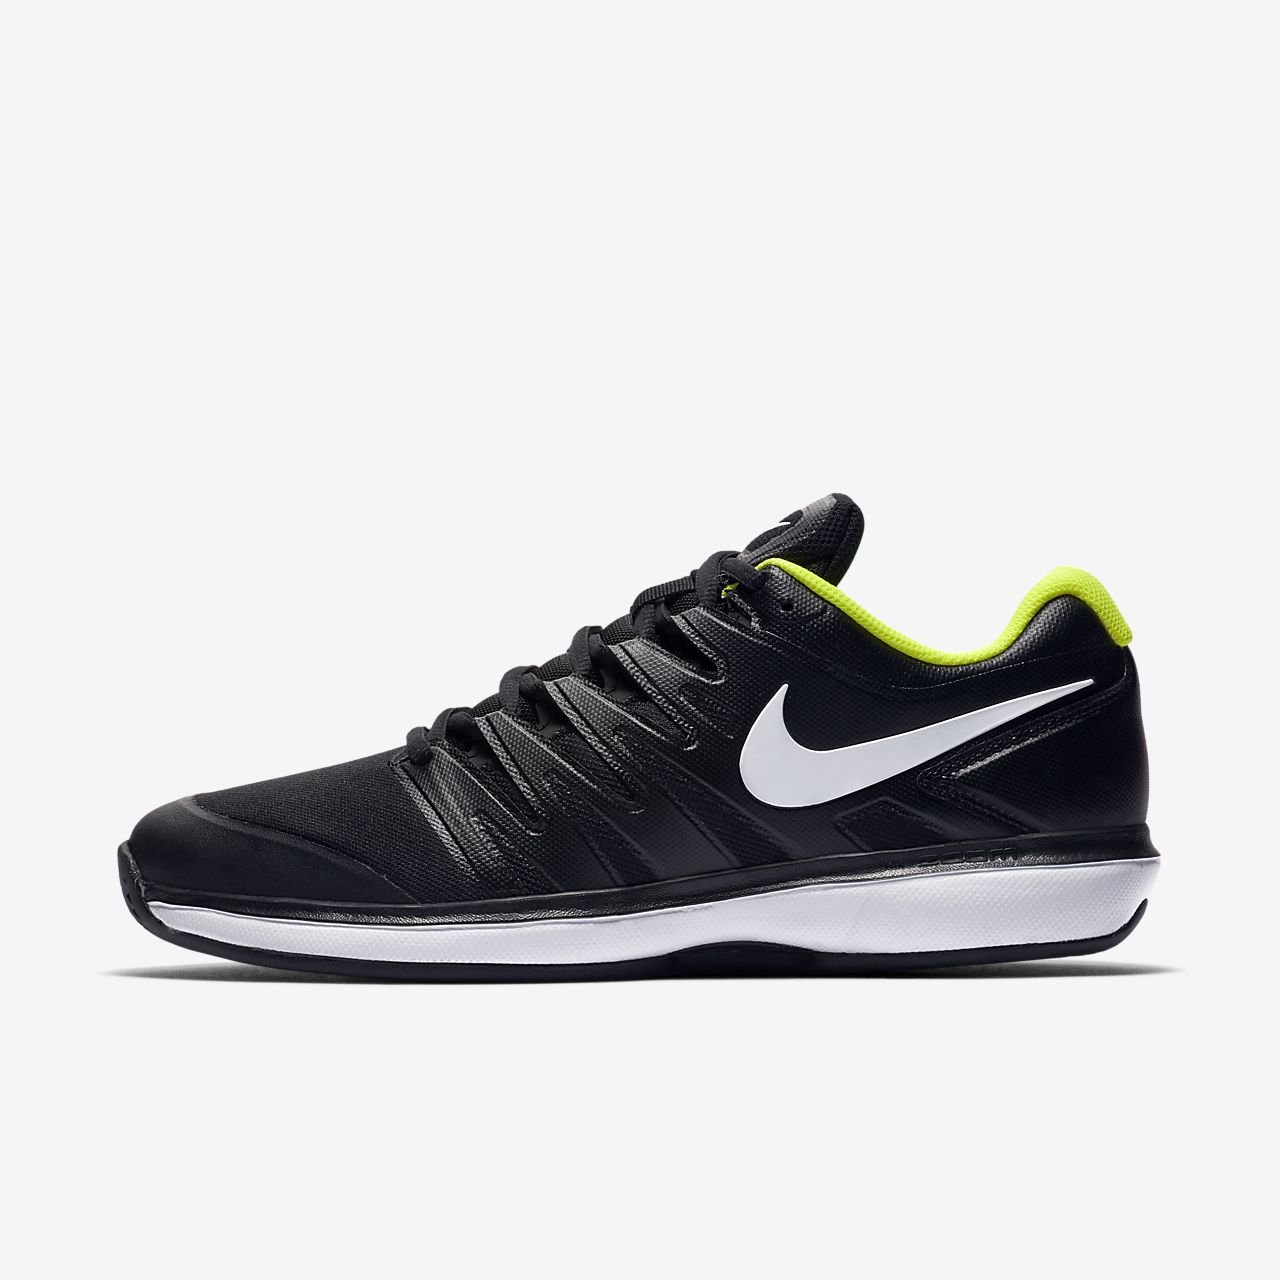 Clay Tennis Shoe. Nike HU